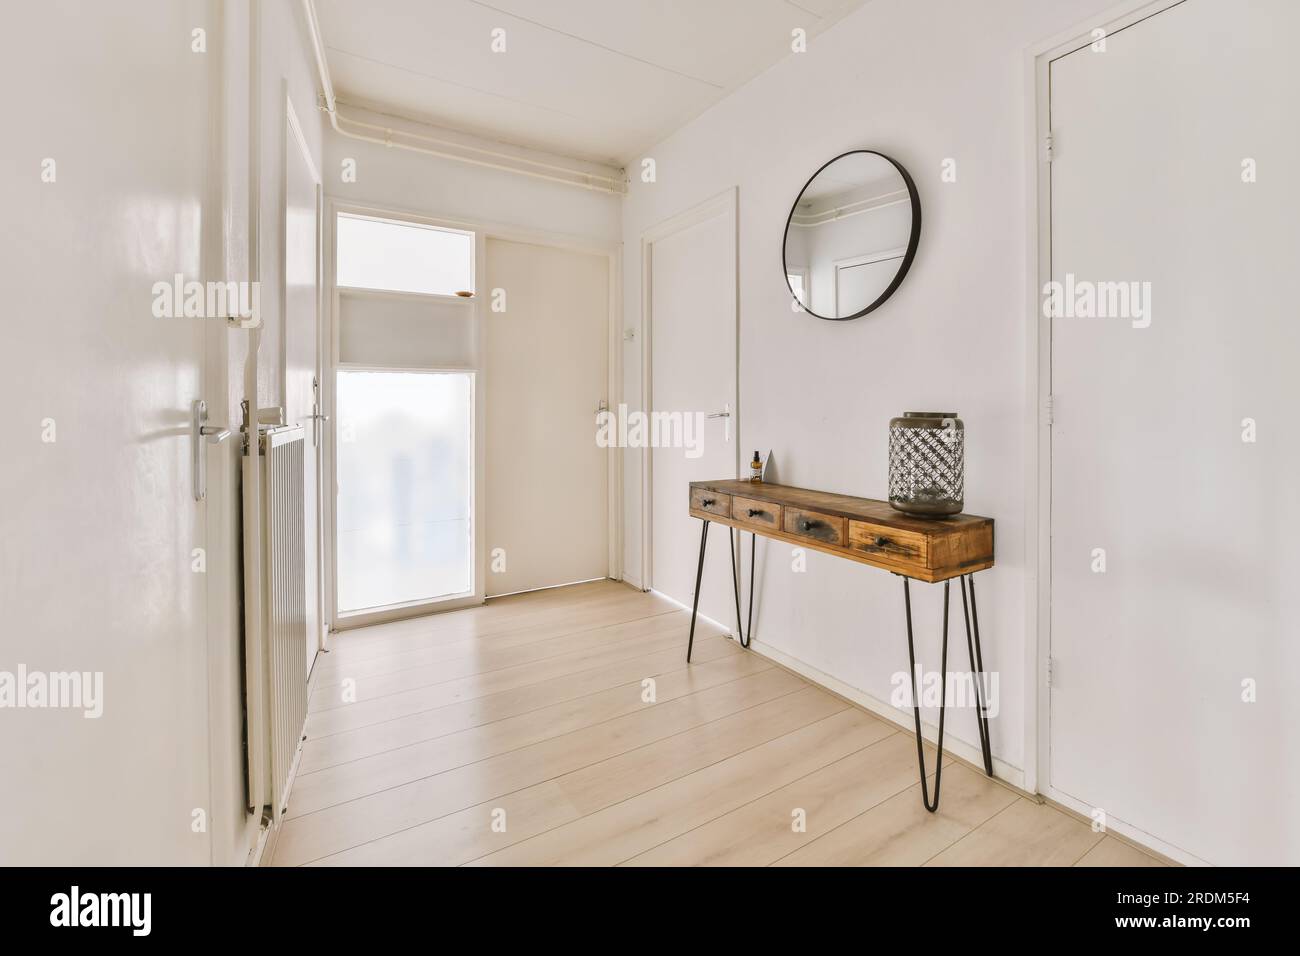 un couloir avec des murs blancs et du parquet la chambre a une table console en bois d'un côté il y a un grand miroir rond Banque D'Images